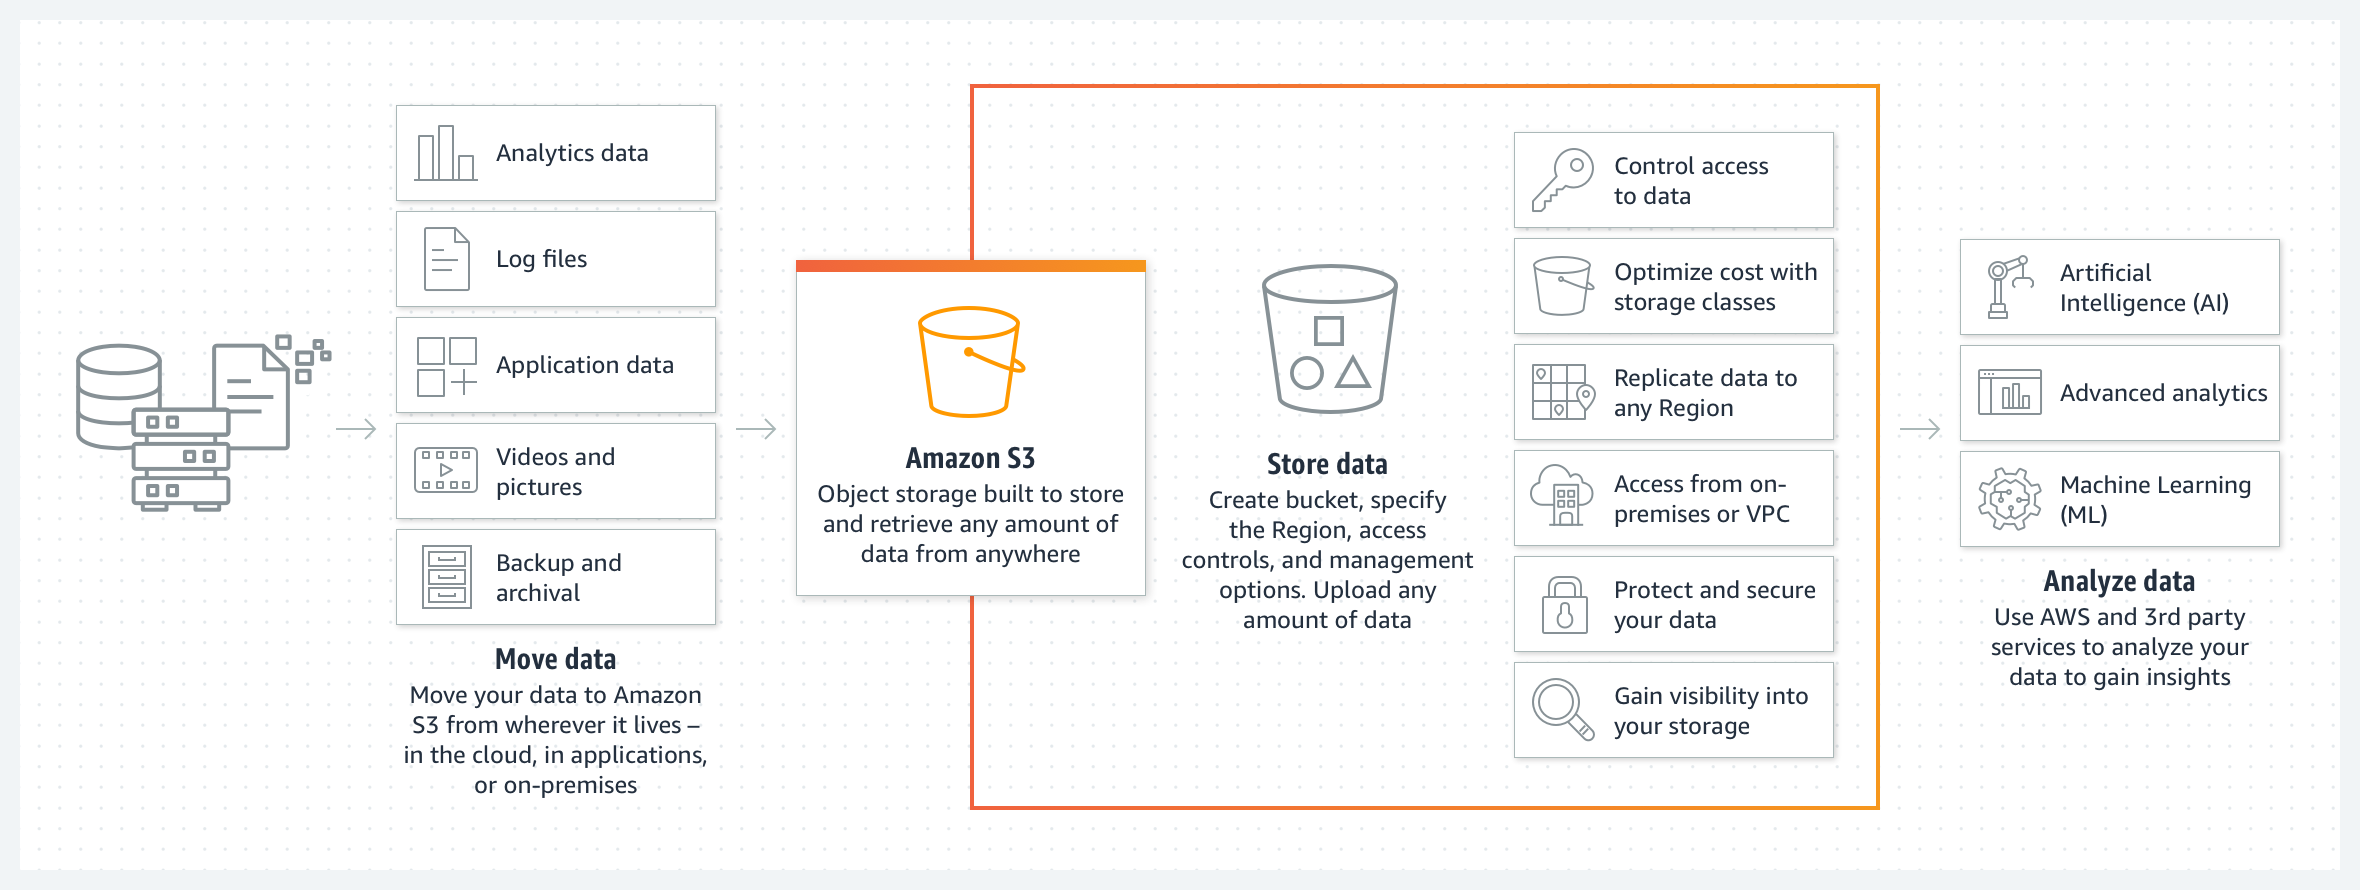 显示如何使用 Amazon S3 移动、存储和分析数据的示意图